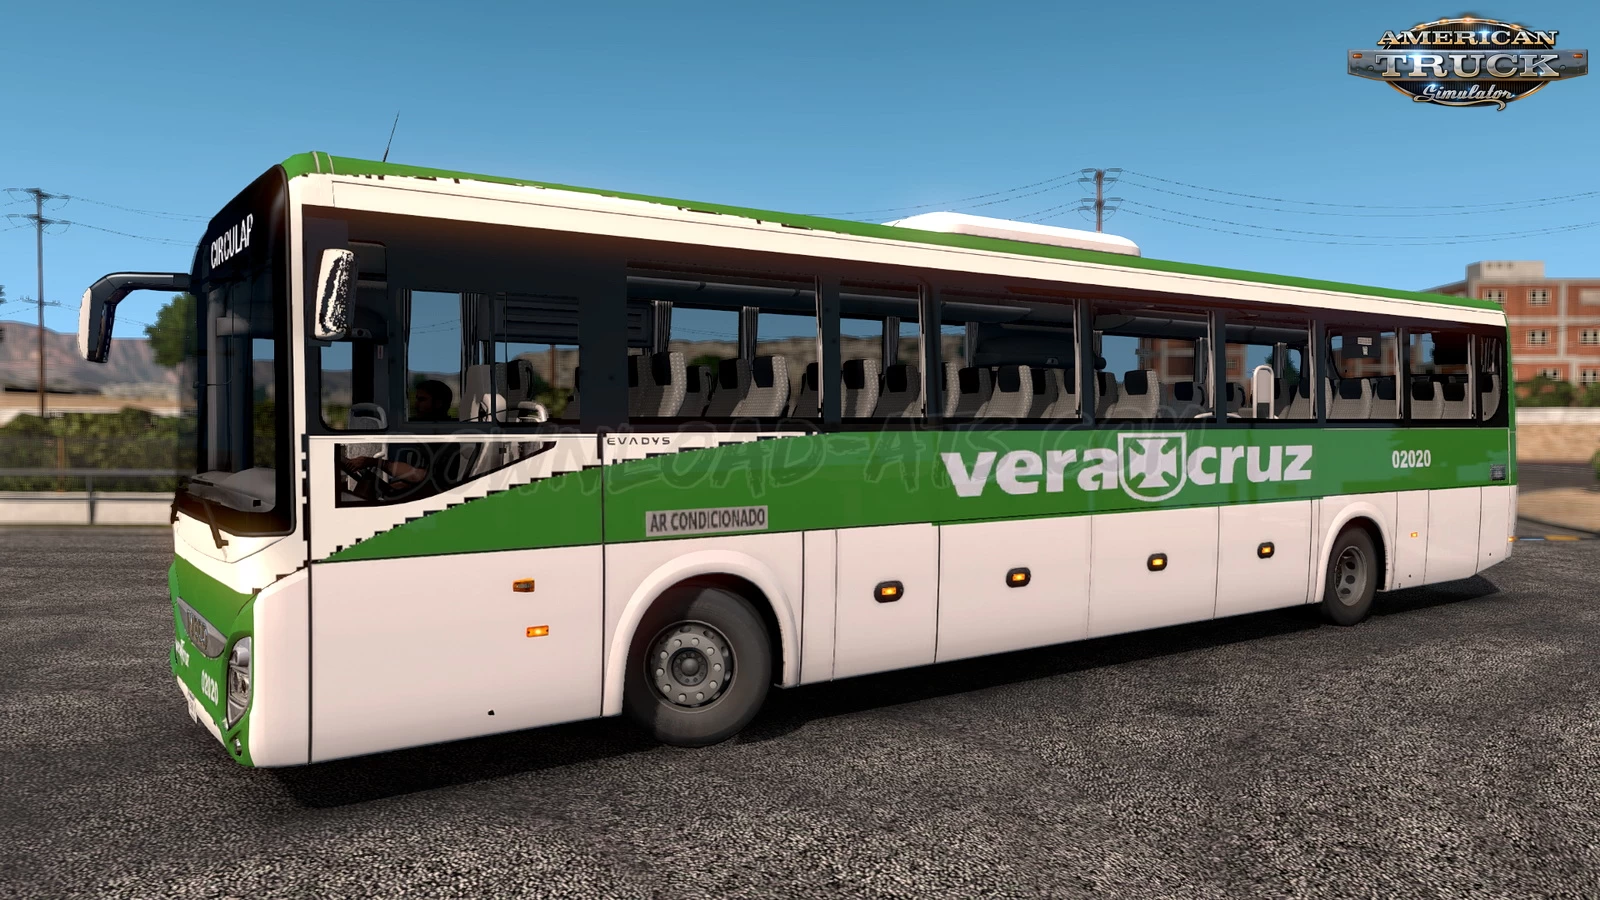 Iveco Evadys Bus + Interior v1.0.9.41 (1.41.x) for ATS